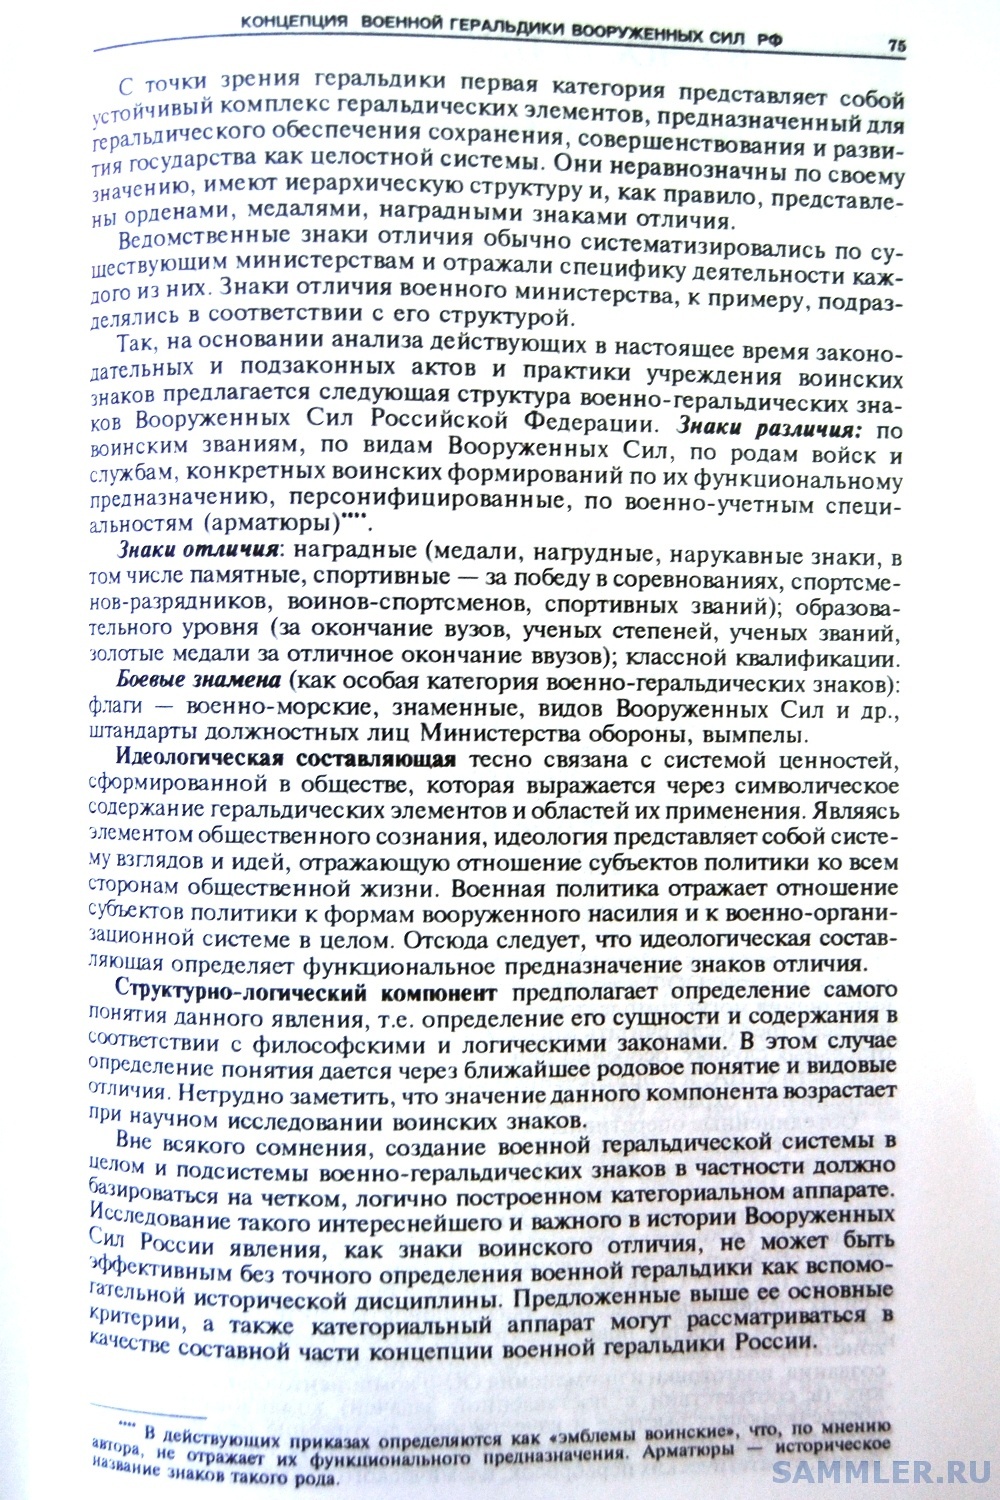 Кузнецов О.В. - Военная мысль. М.,  1999. № 3. С. 75.JPG